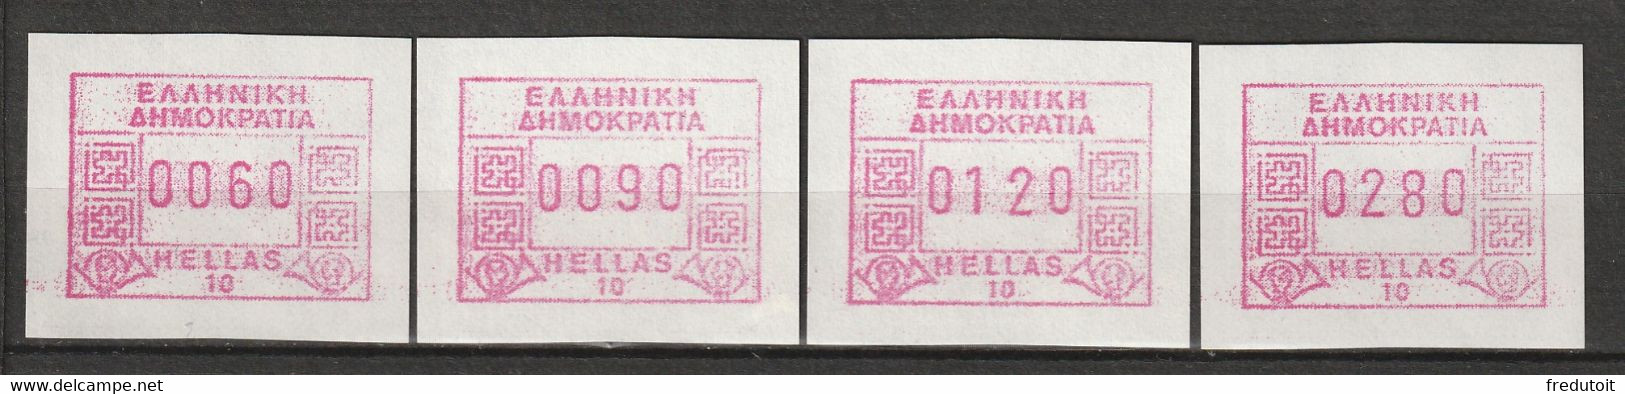 GRECE - Timbres De Distributeurs : ATM/Frama - N°9 ** (1991-92) 10 Akropolis - Vignette [ATM]